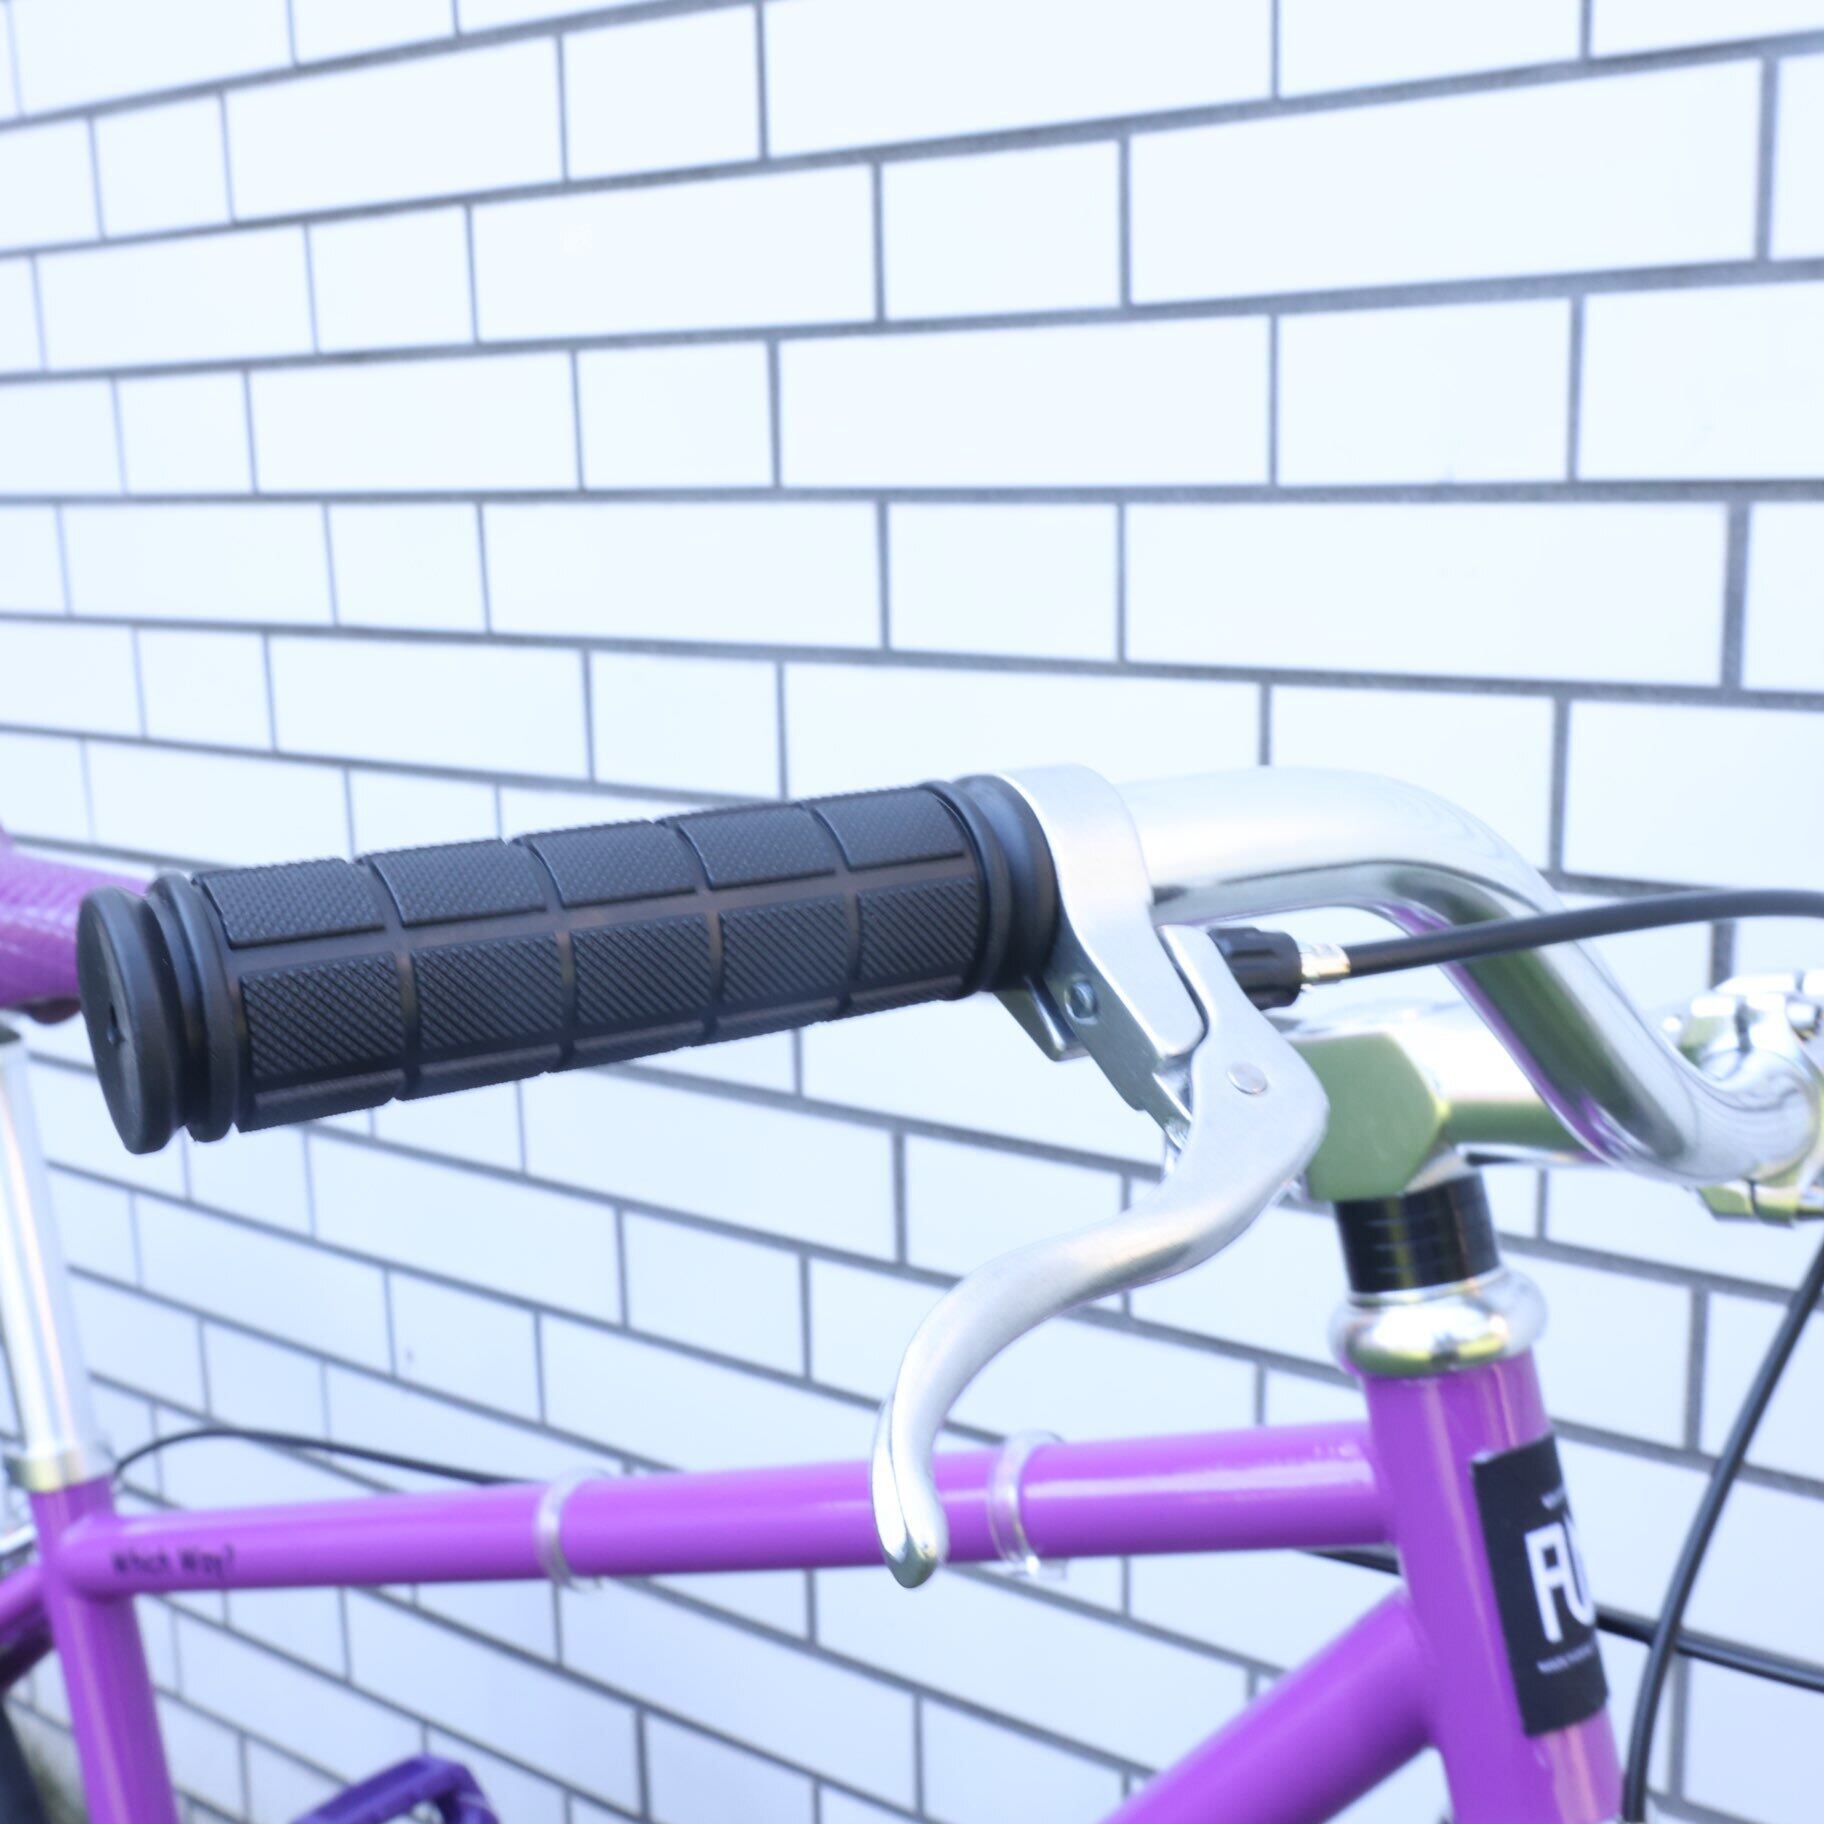 【新品】FUN 700C サイズ54 江戸紫 パープル ピストバイク 自転車